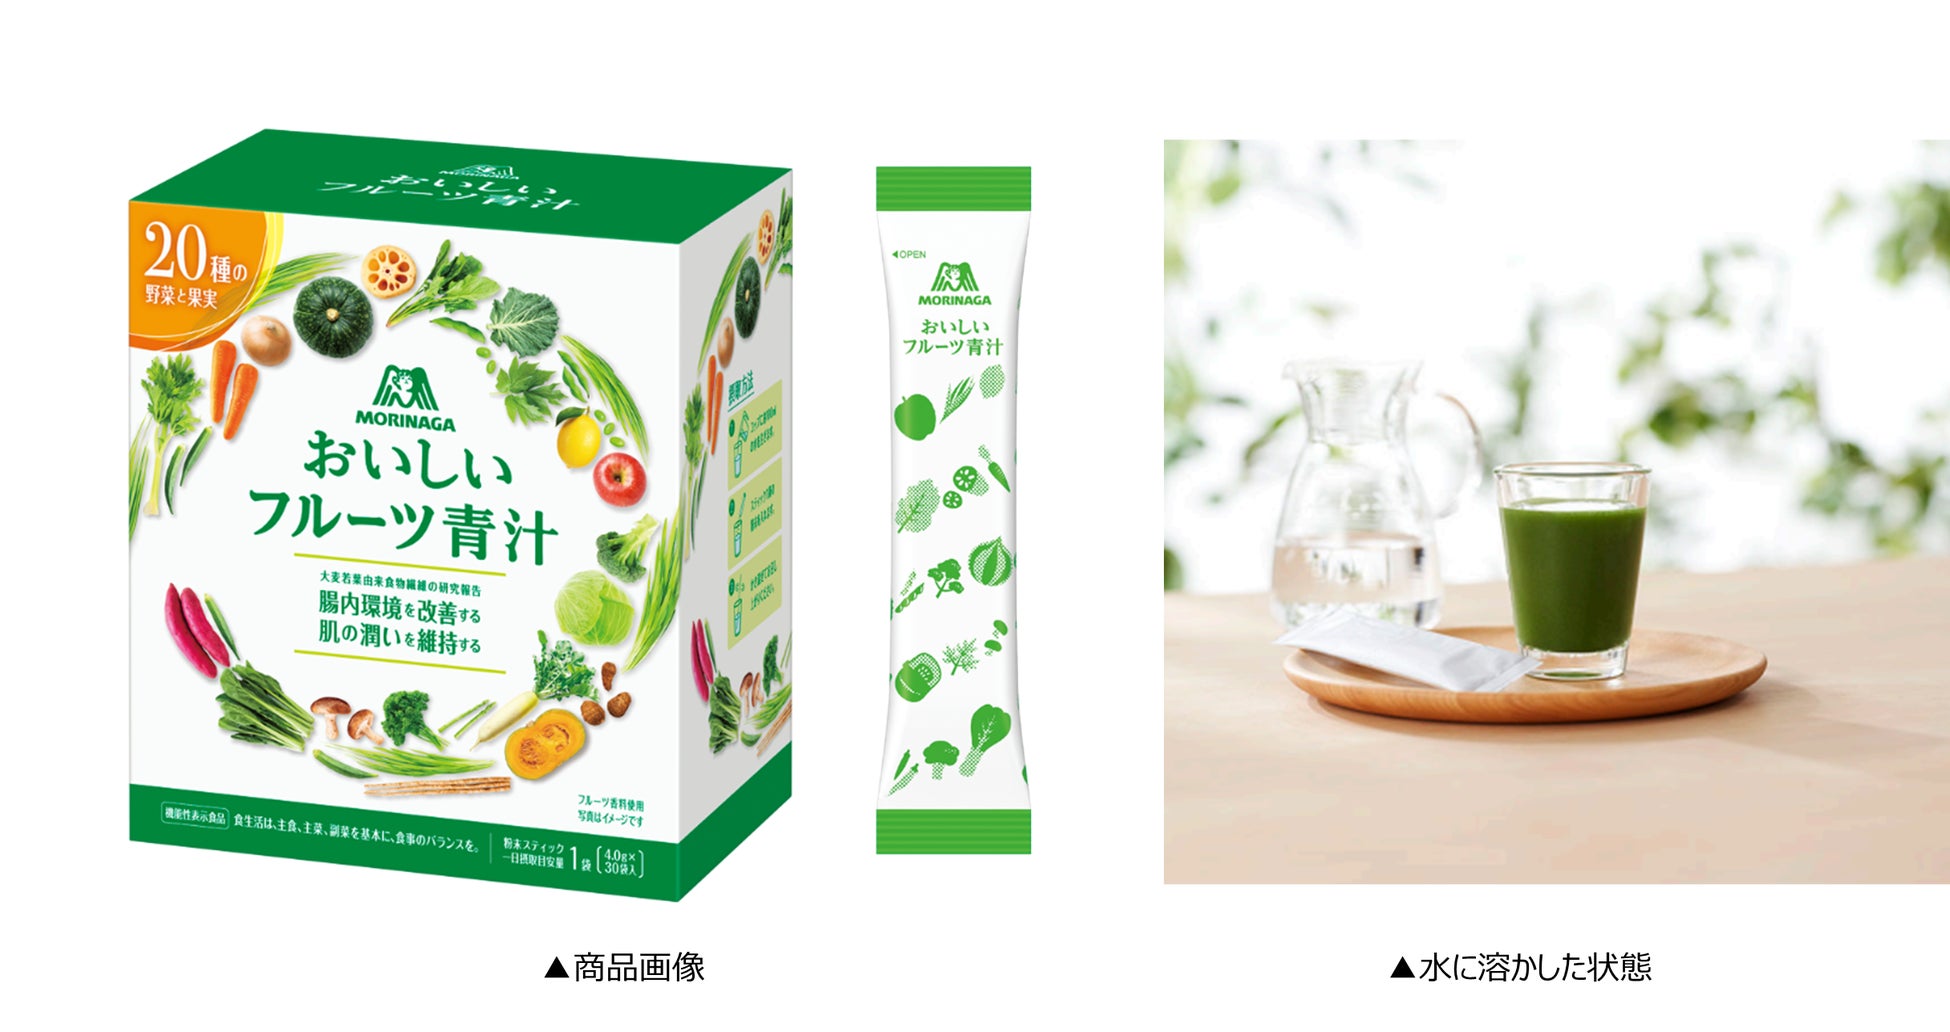 台湾高級茶・阿里山ティーの新しい楽しみ方をご提案「ゆずピーチ阿里山 ミルクティー／ティーエード」